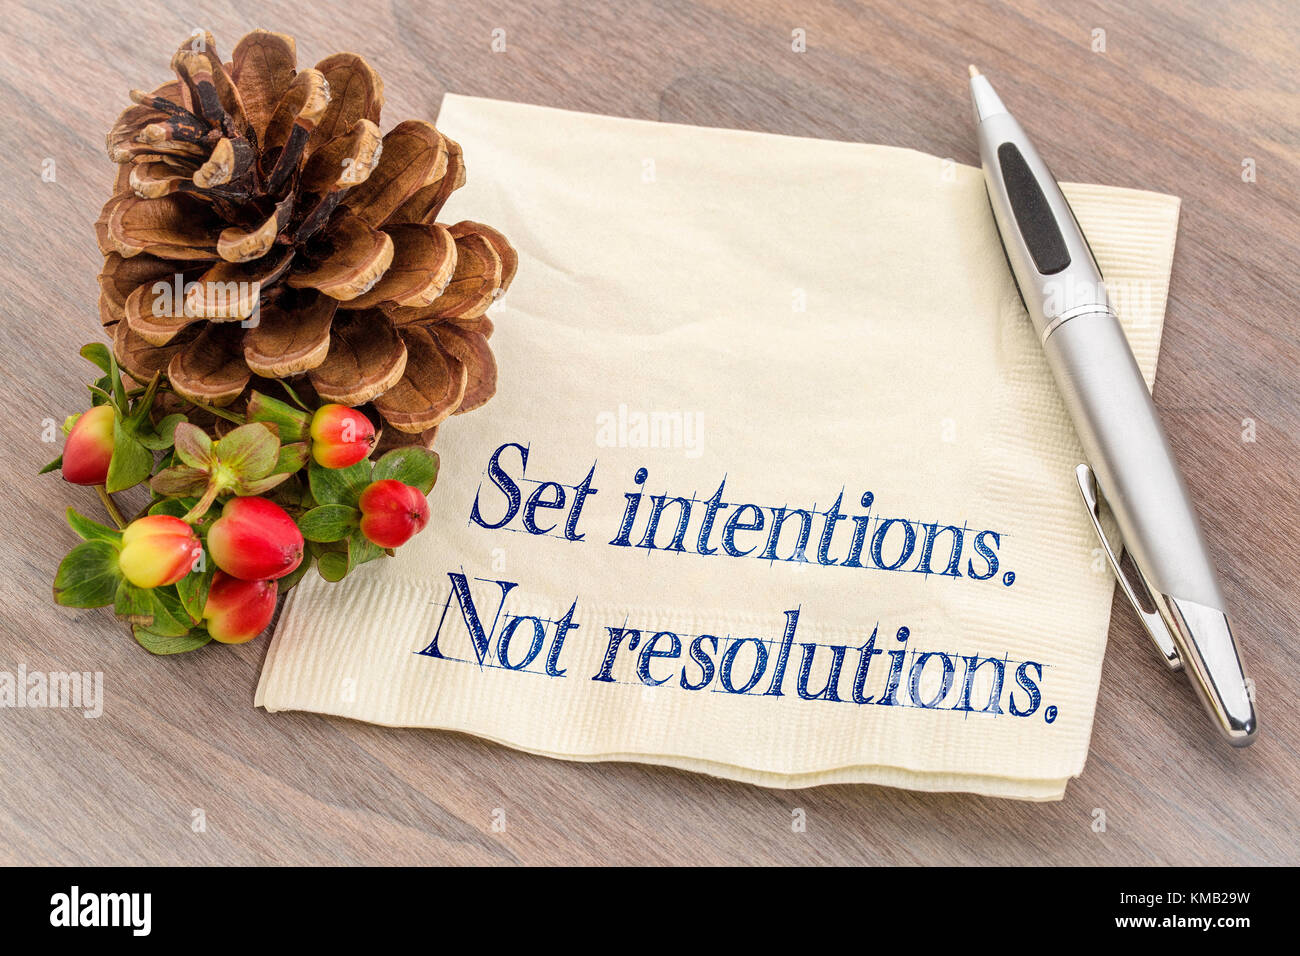 Set Absichten. Nicht Resolutionen. Neues Jahr Ziele Konzept. Handschrift auf eine Serviette mit einem Tannenzapfen. Stockfoto